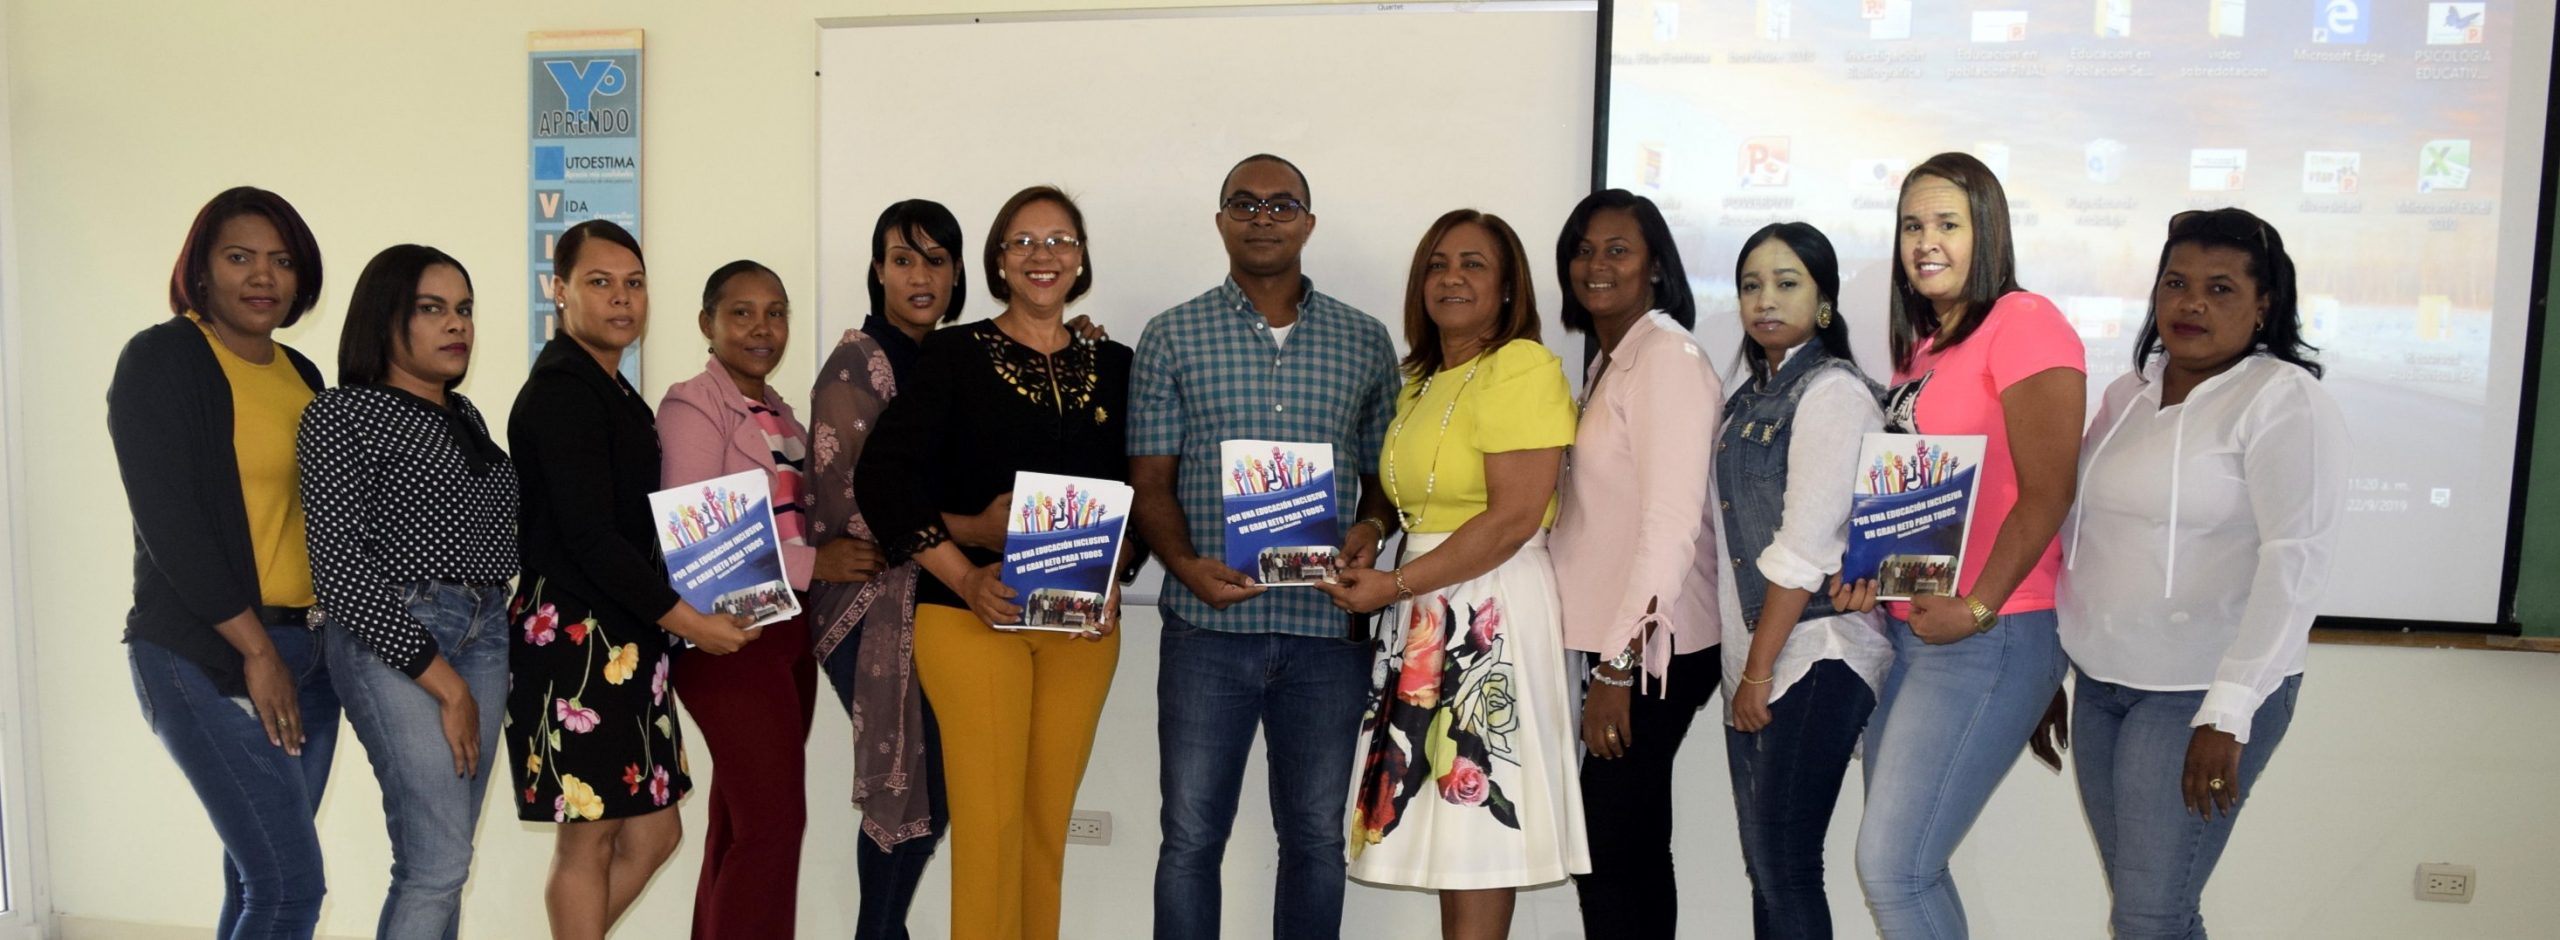 Grupo Maestría en Orientación Educativa e Intervención Psicopedagógica en UASD San Juan muestra revista impresa con sus trabajos